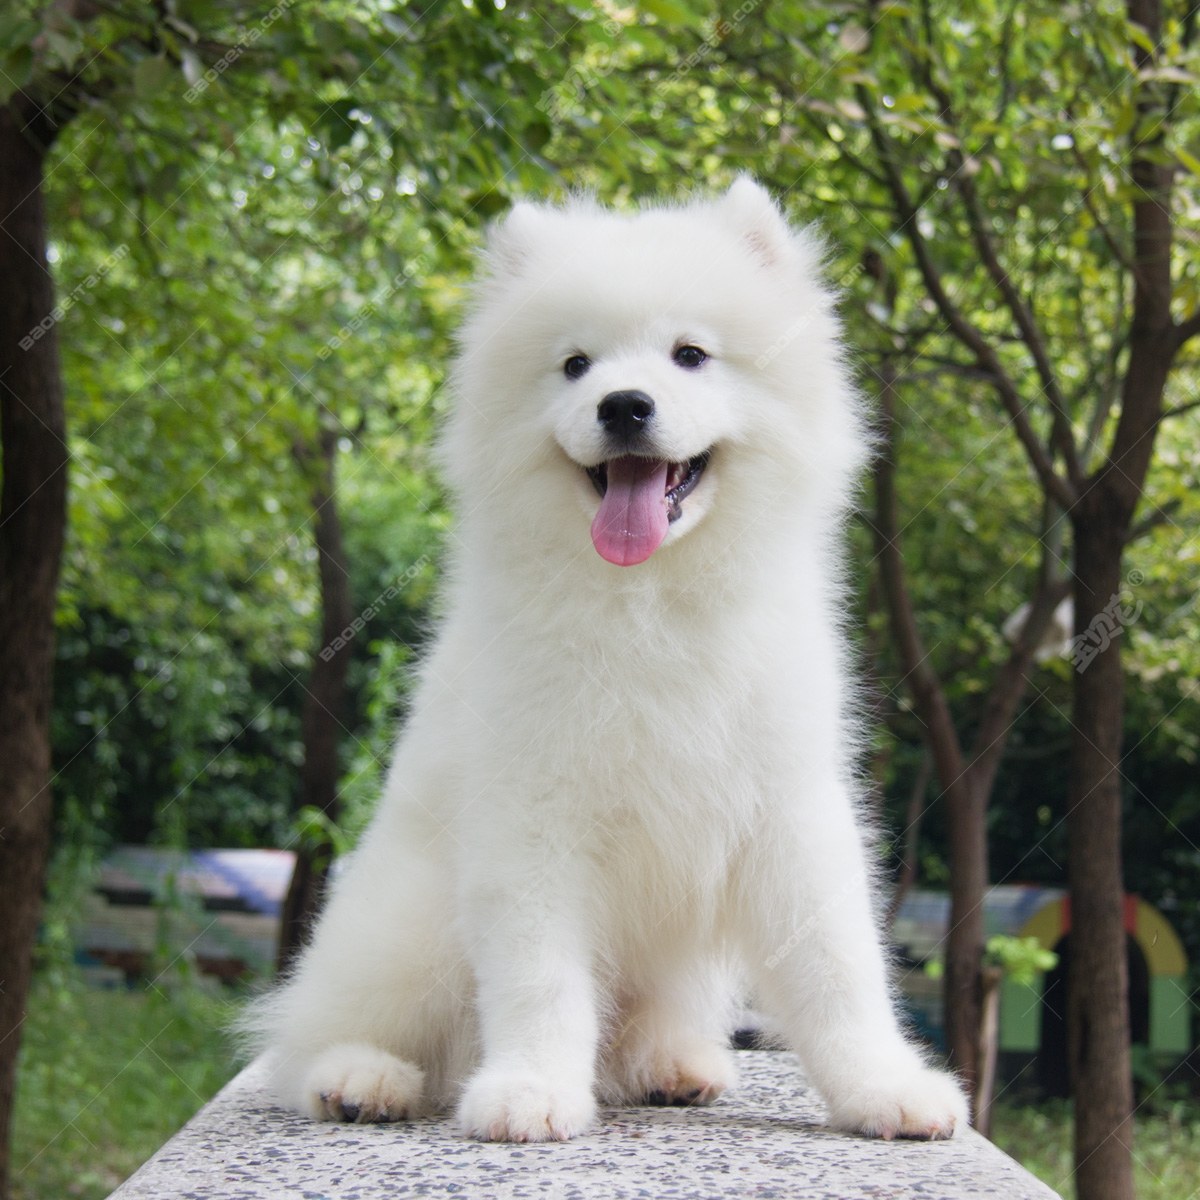 纯种萨摩耶犬幼犬狗狗出售 宠物萨摩耶犬可支付宝交易 萨摩耶犬 /编号10038700 - 宝贝它